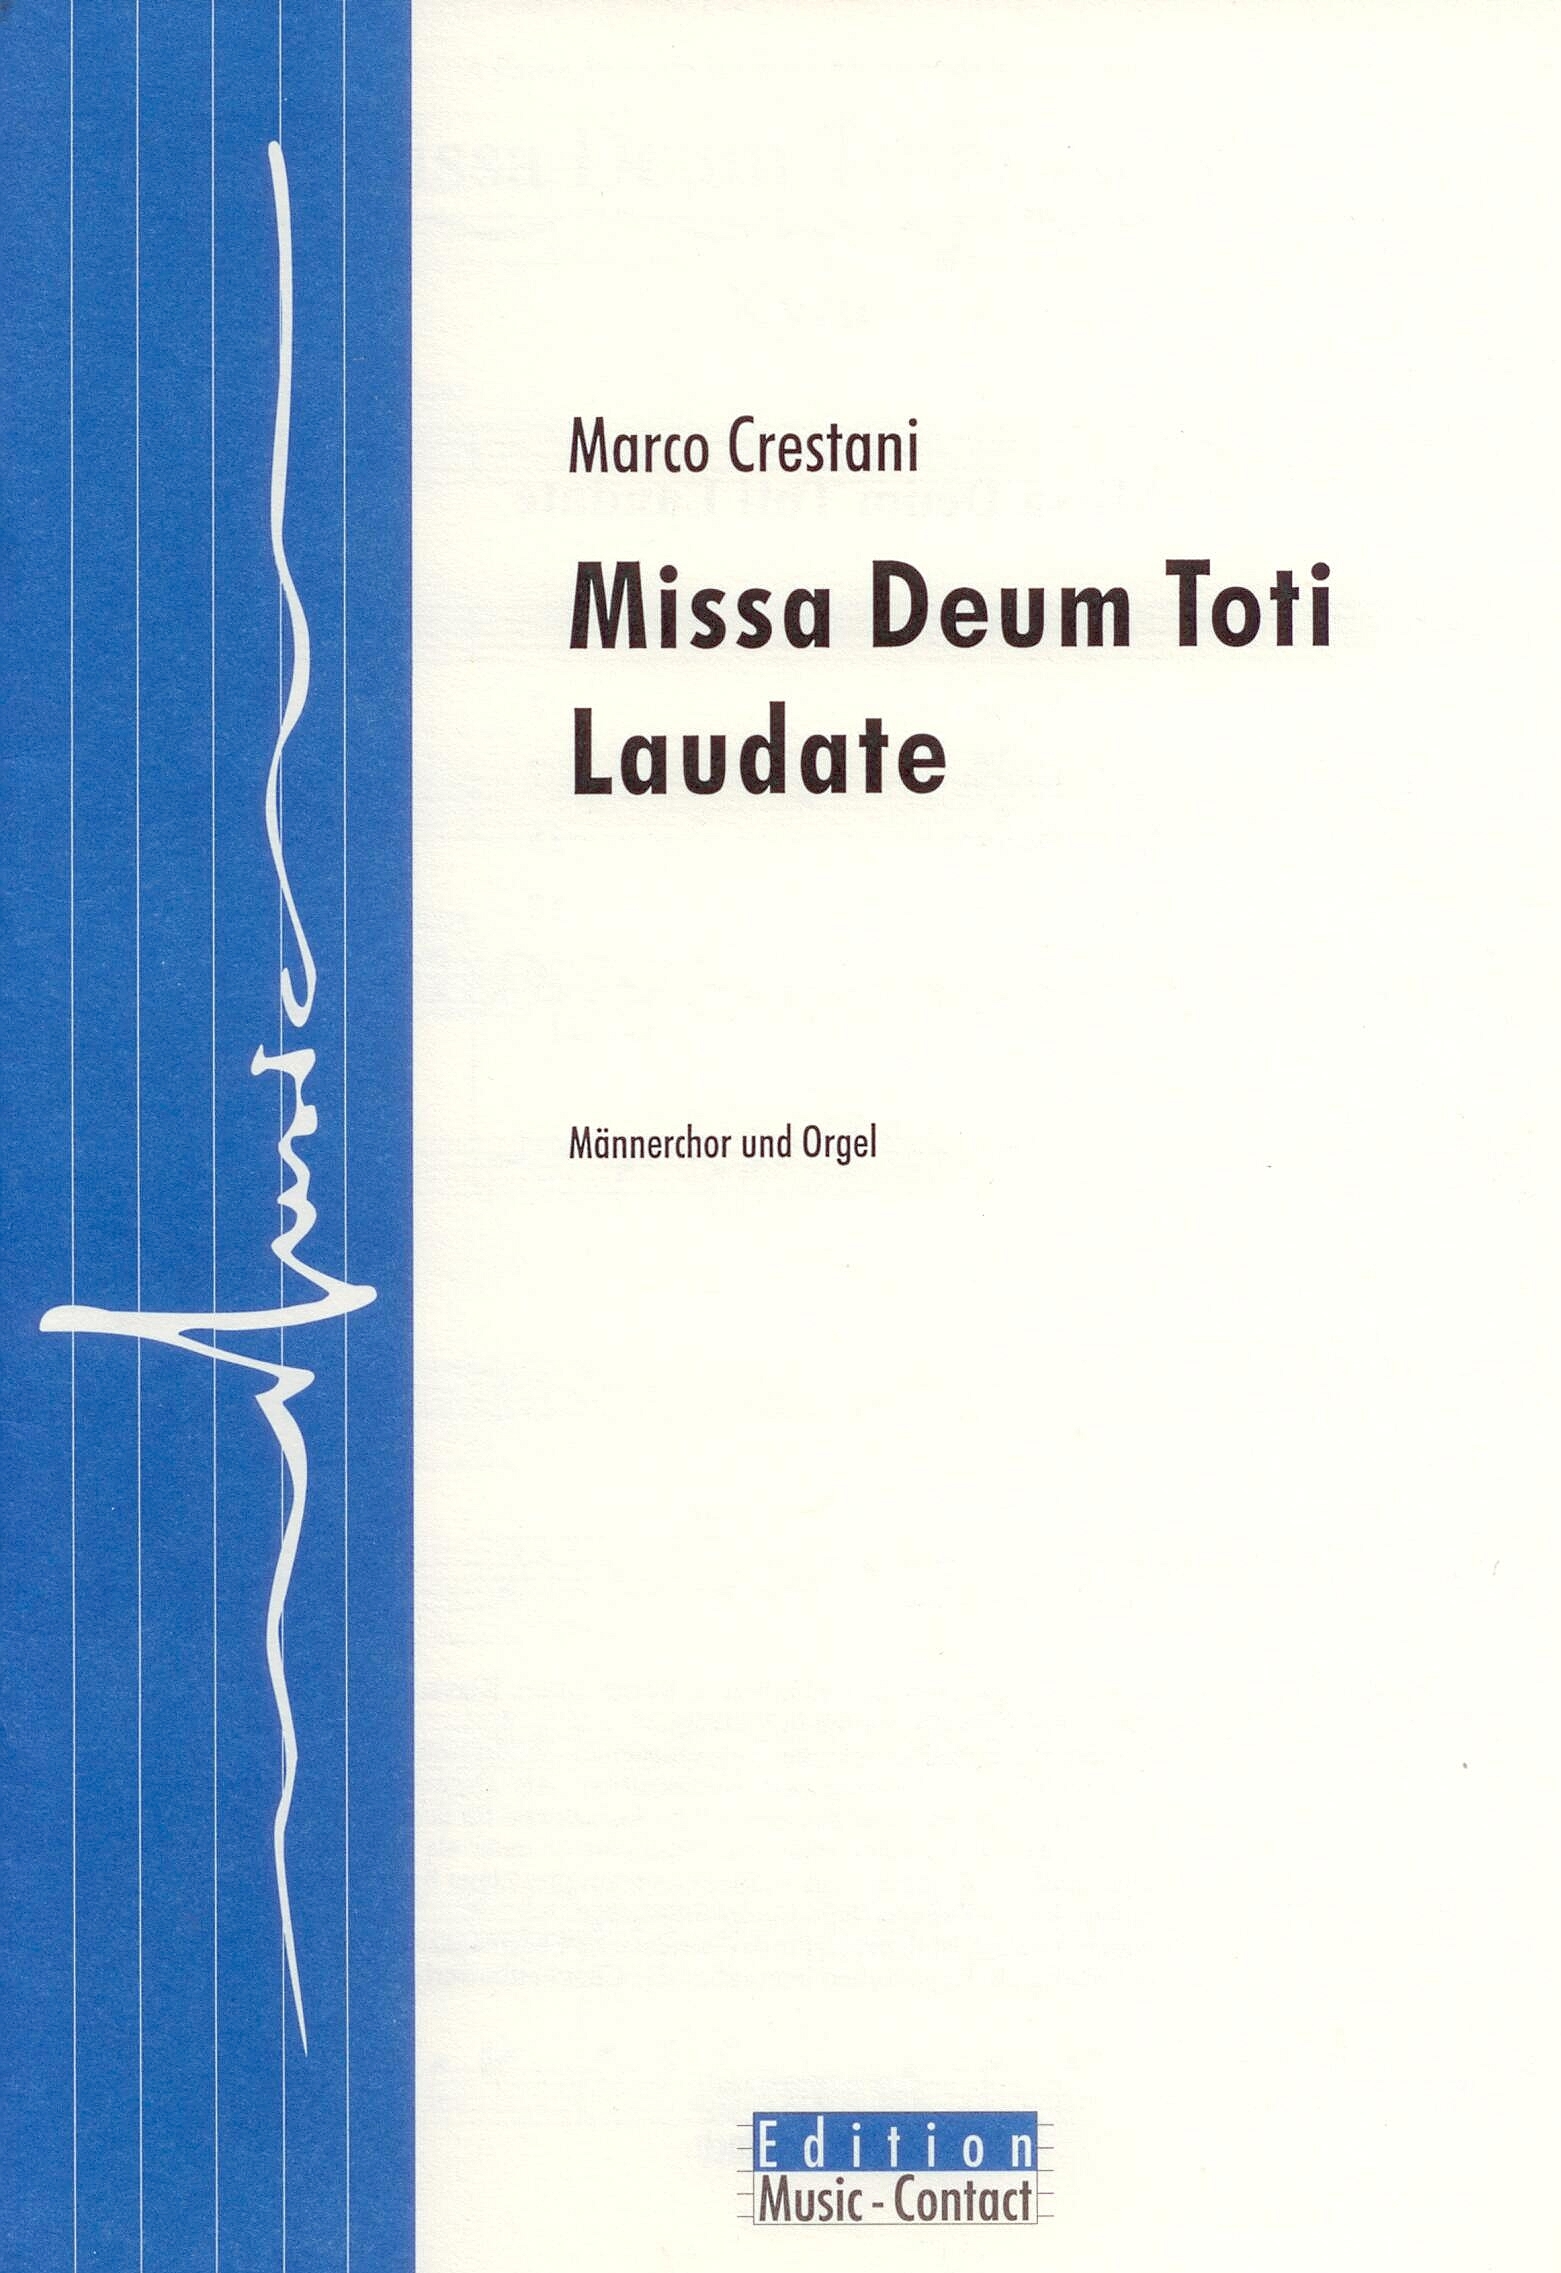 Missa Deum Toti Laudate - Show sample score